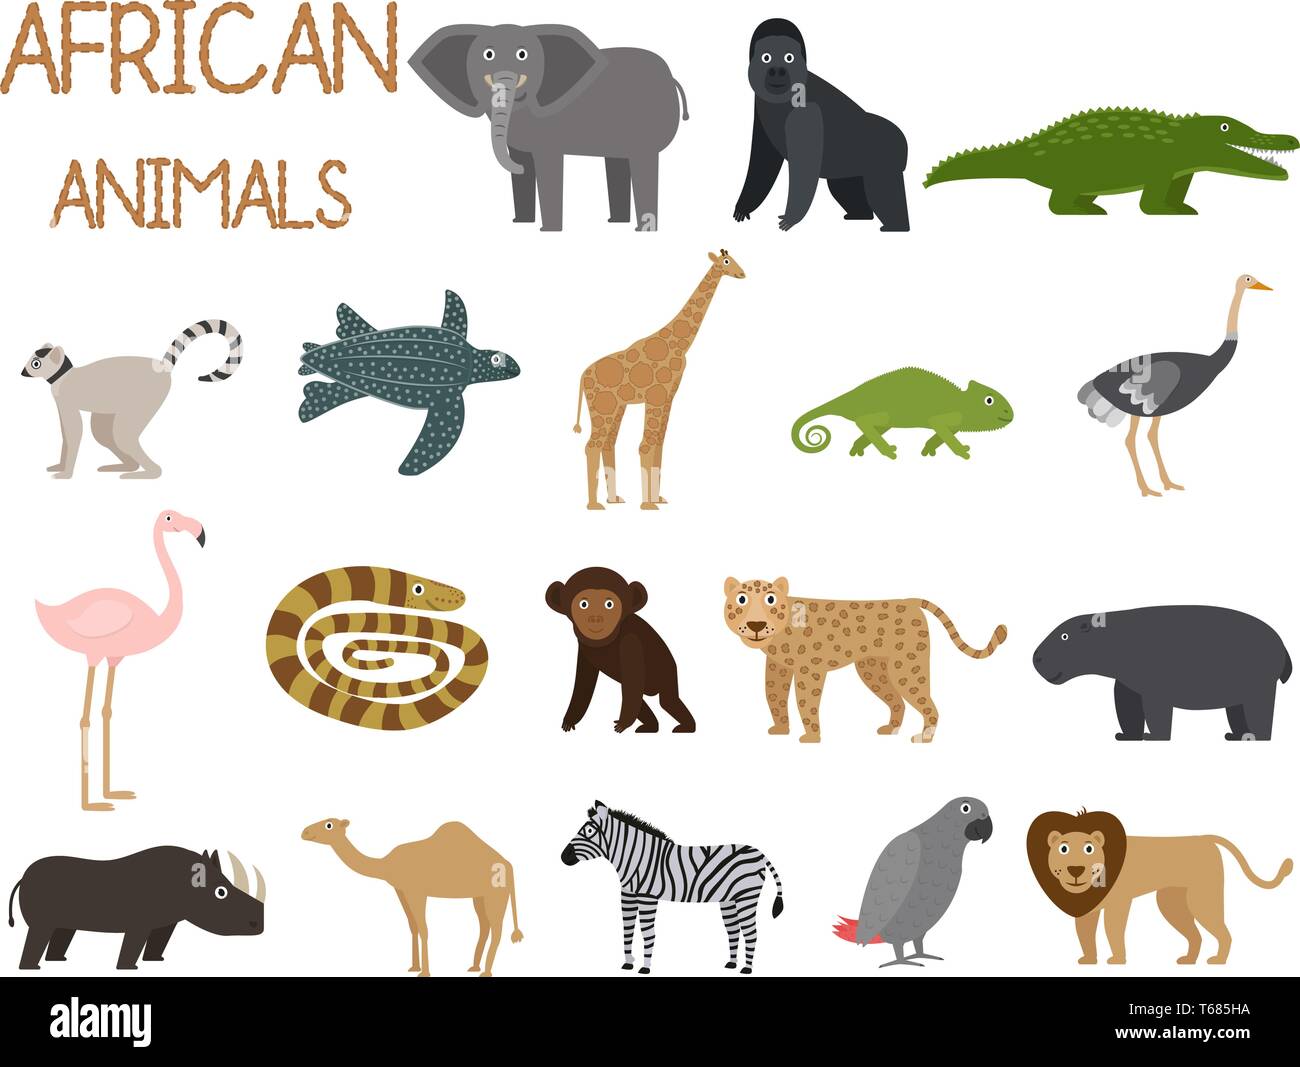 Afrikanische Tiere der Symbole im flachen Stil festgelegt, der afrikanischen Fauna, Elefant, Nashorn, Löwe, Papagei, etc. Vector Illustration Stock Vektor